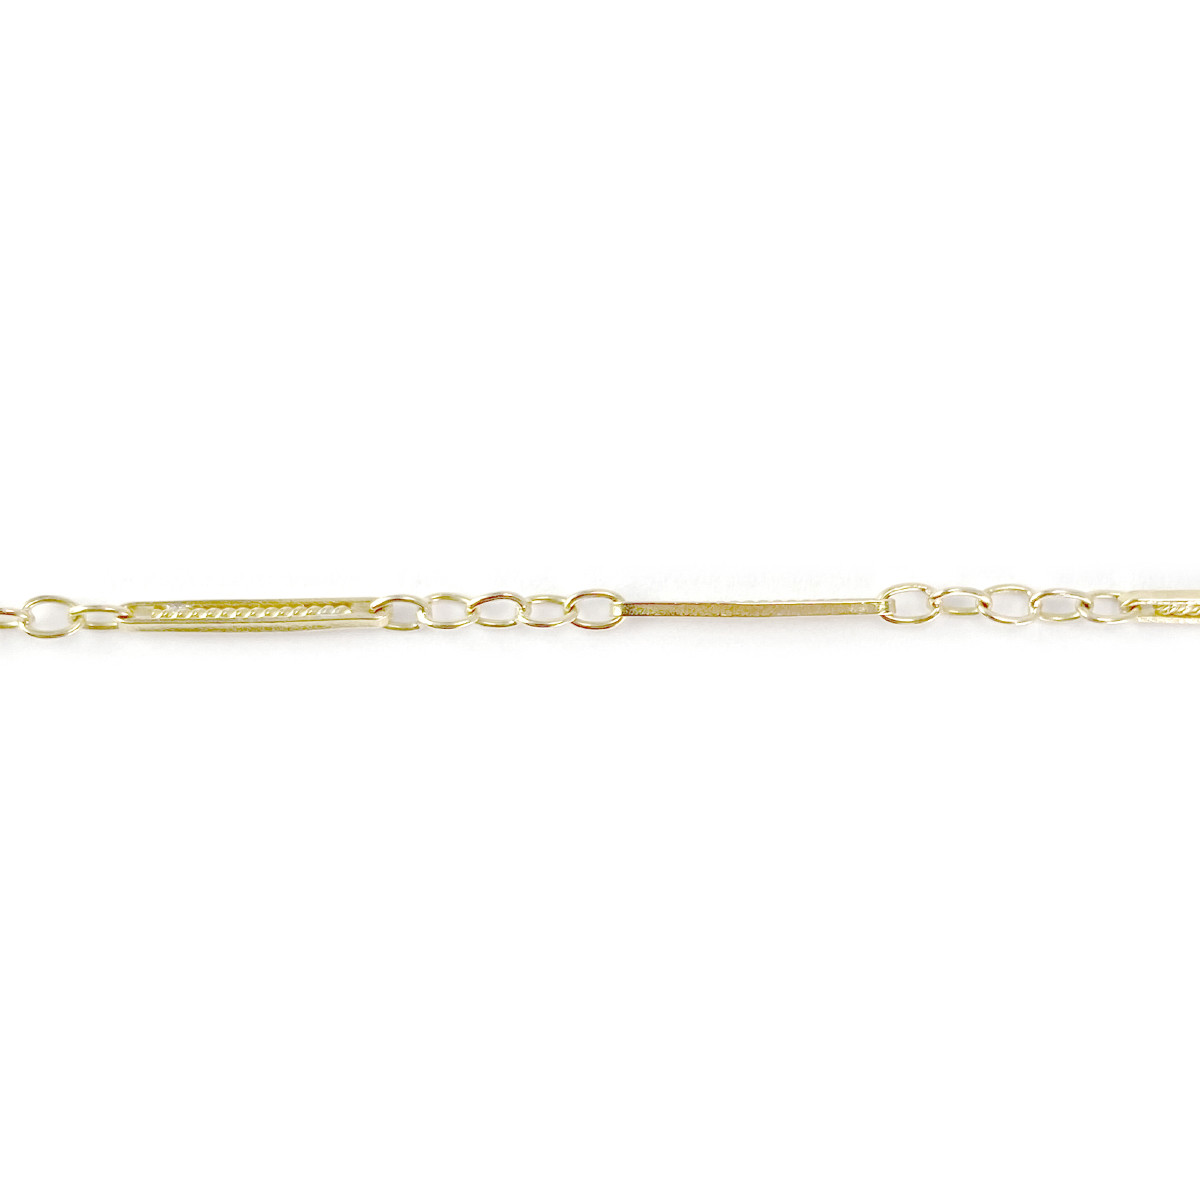 Collier d'occasion or 750 jaune maille fantaisie perles de culture blanches 41 cm - vue 3